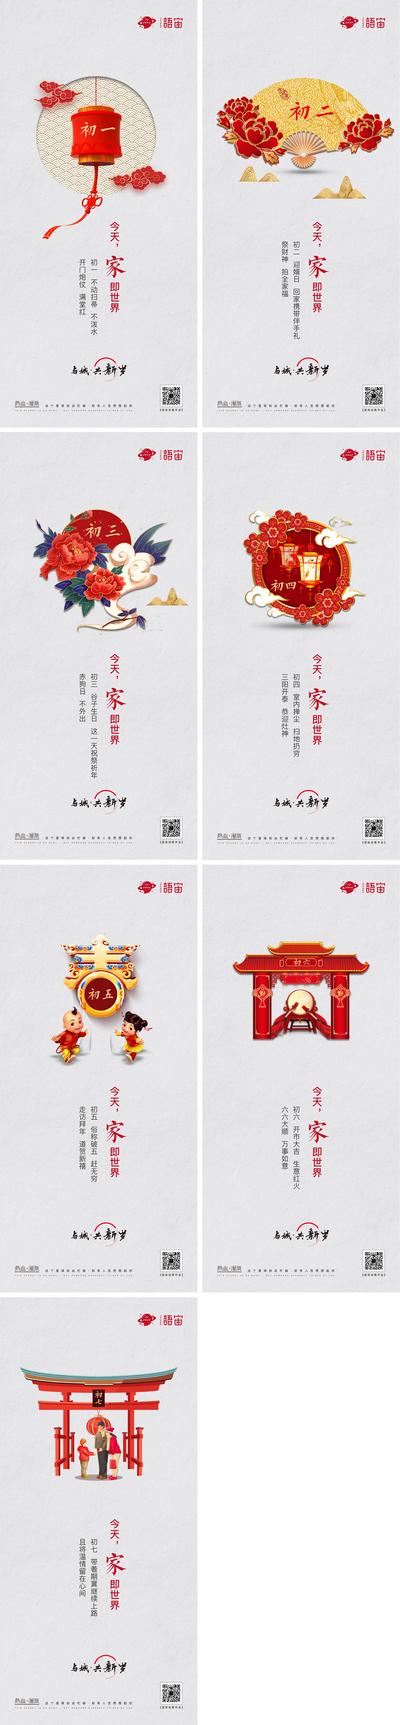 南门网 海报 中国传统节日 房地产 春节 系列 习俗 插画 初一至初七